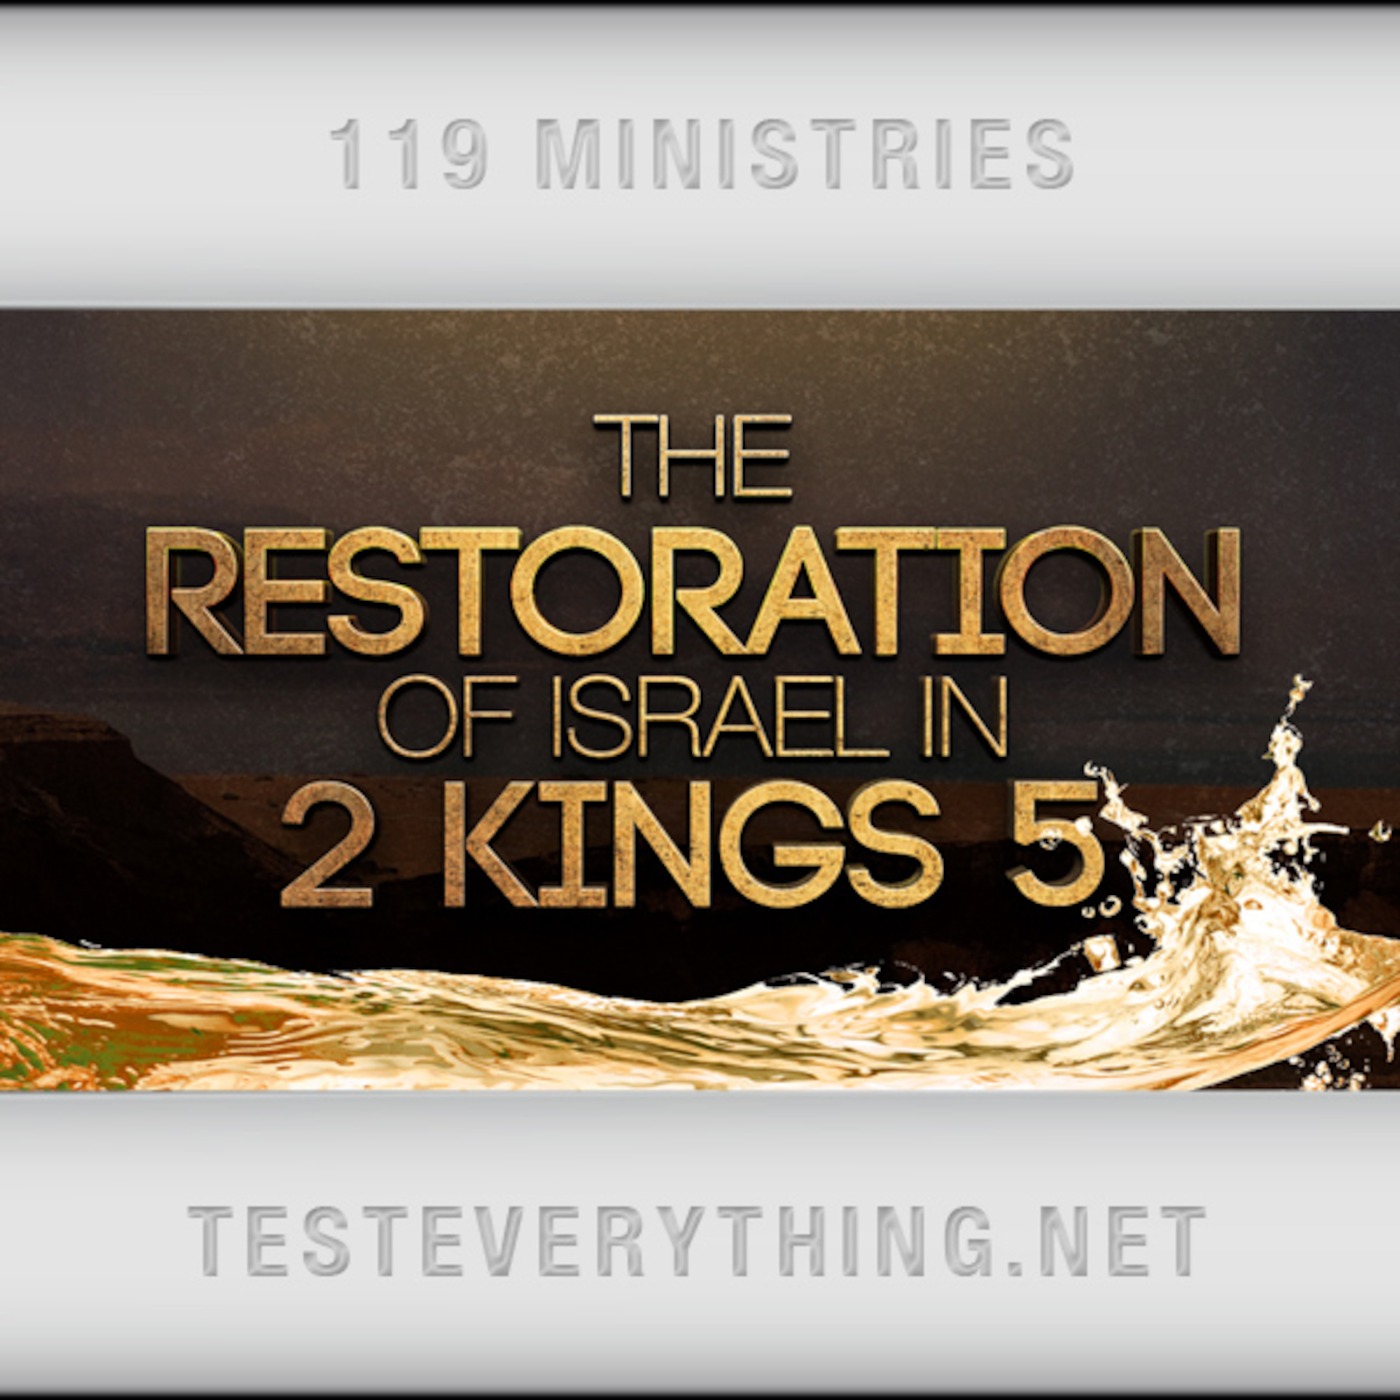 TE: The Restoration of Israel in 2 Kings 5